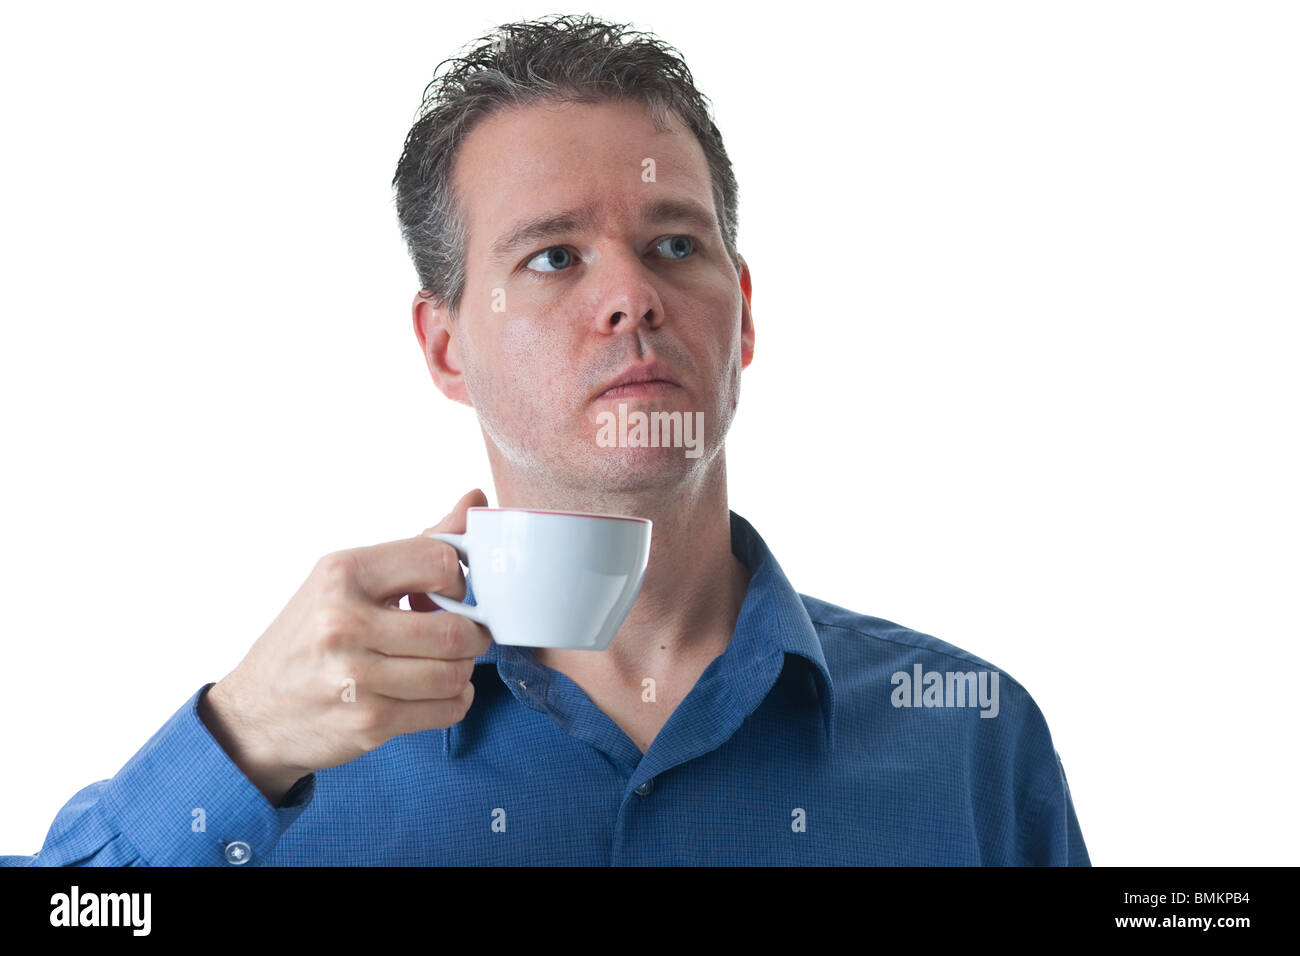 Ein Mann in einem blauen Kleid Shirt, hält einen kleinen Cappuccino / Coffee Cup, isoliert auf weiss. Stockfoto